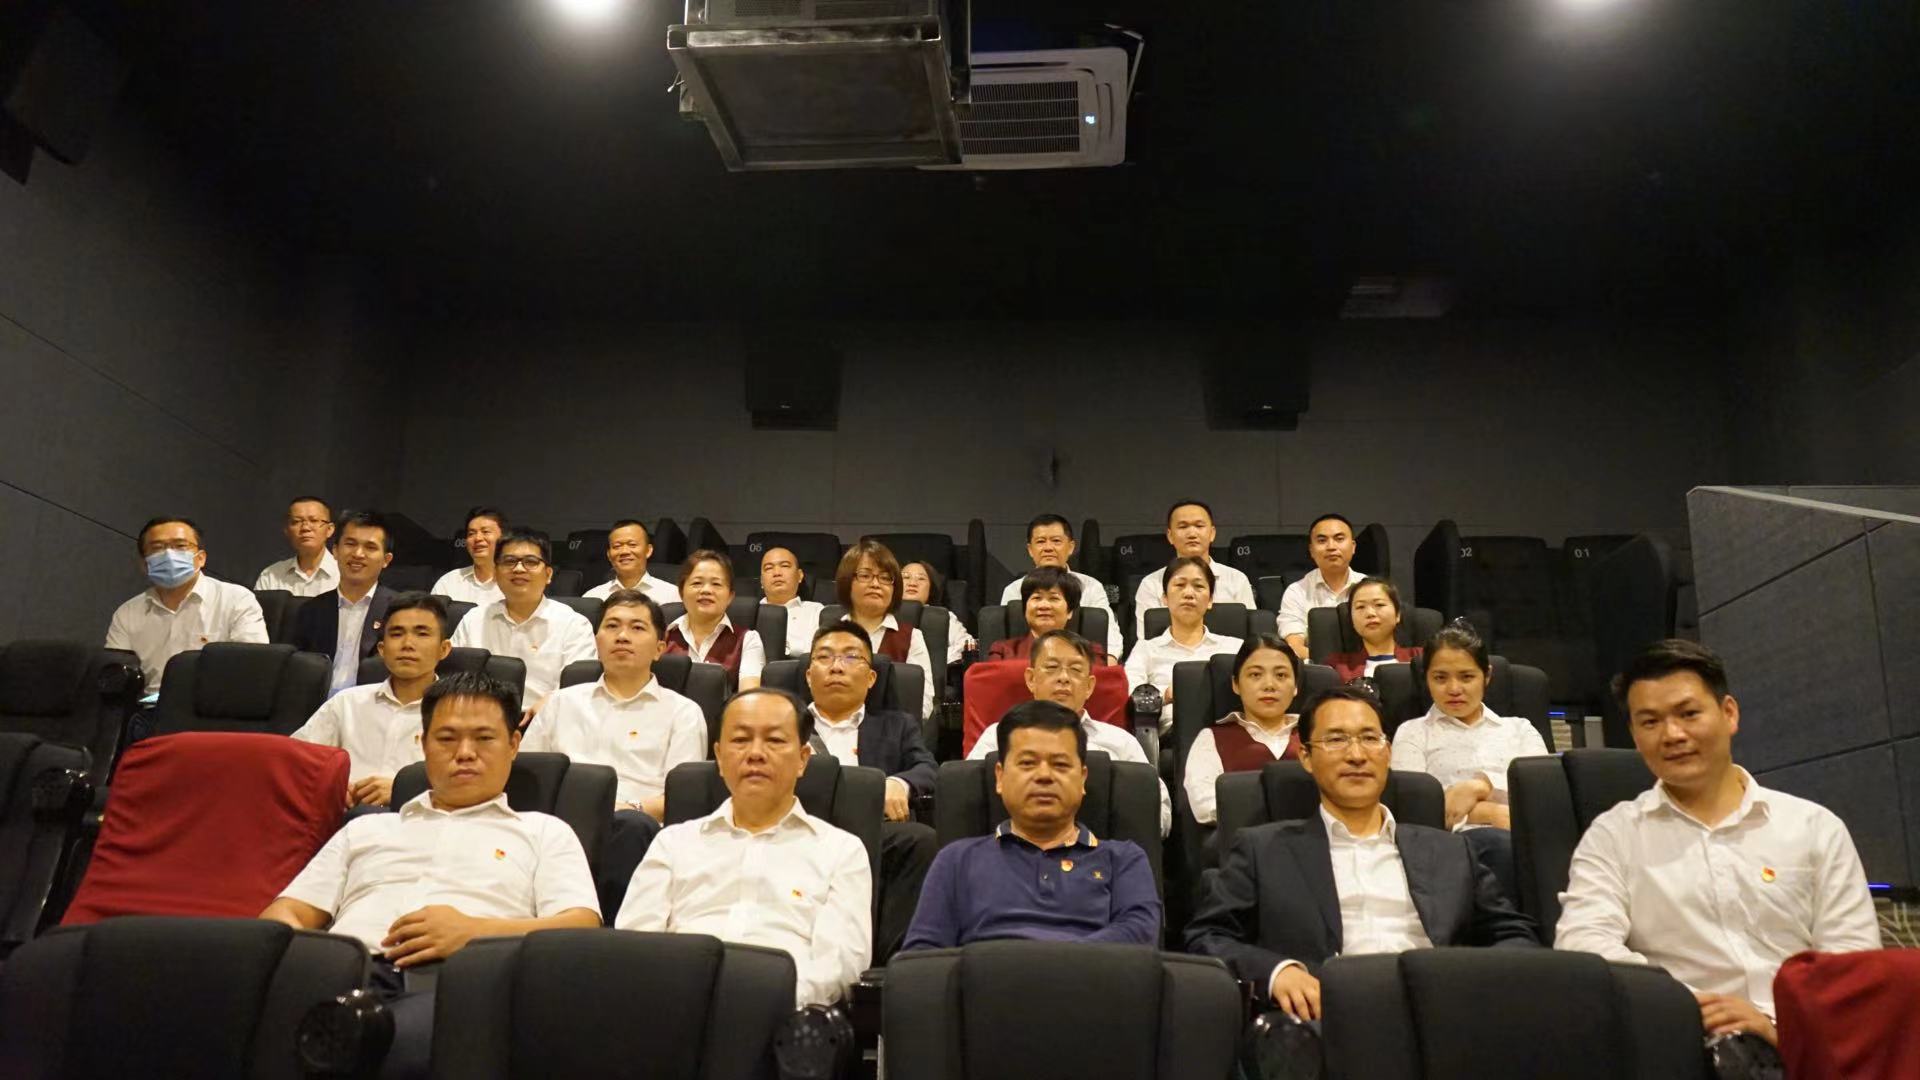 屯昌农商银行组织领导干部观看电影《郭富山》